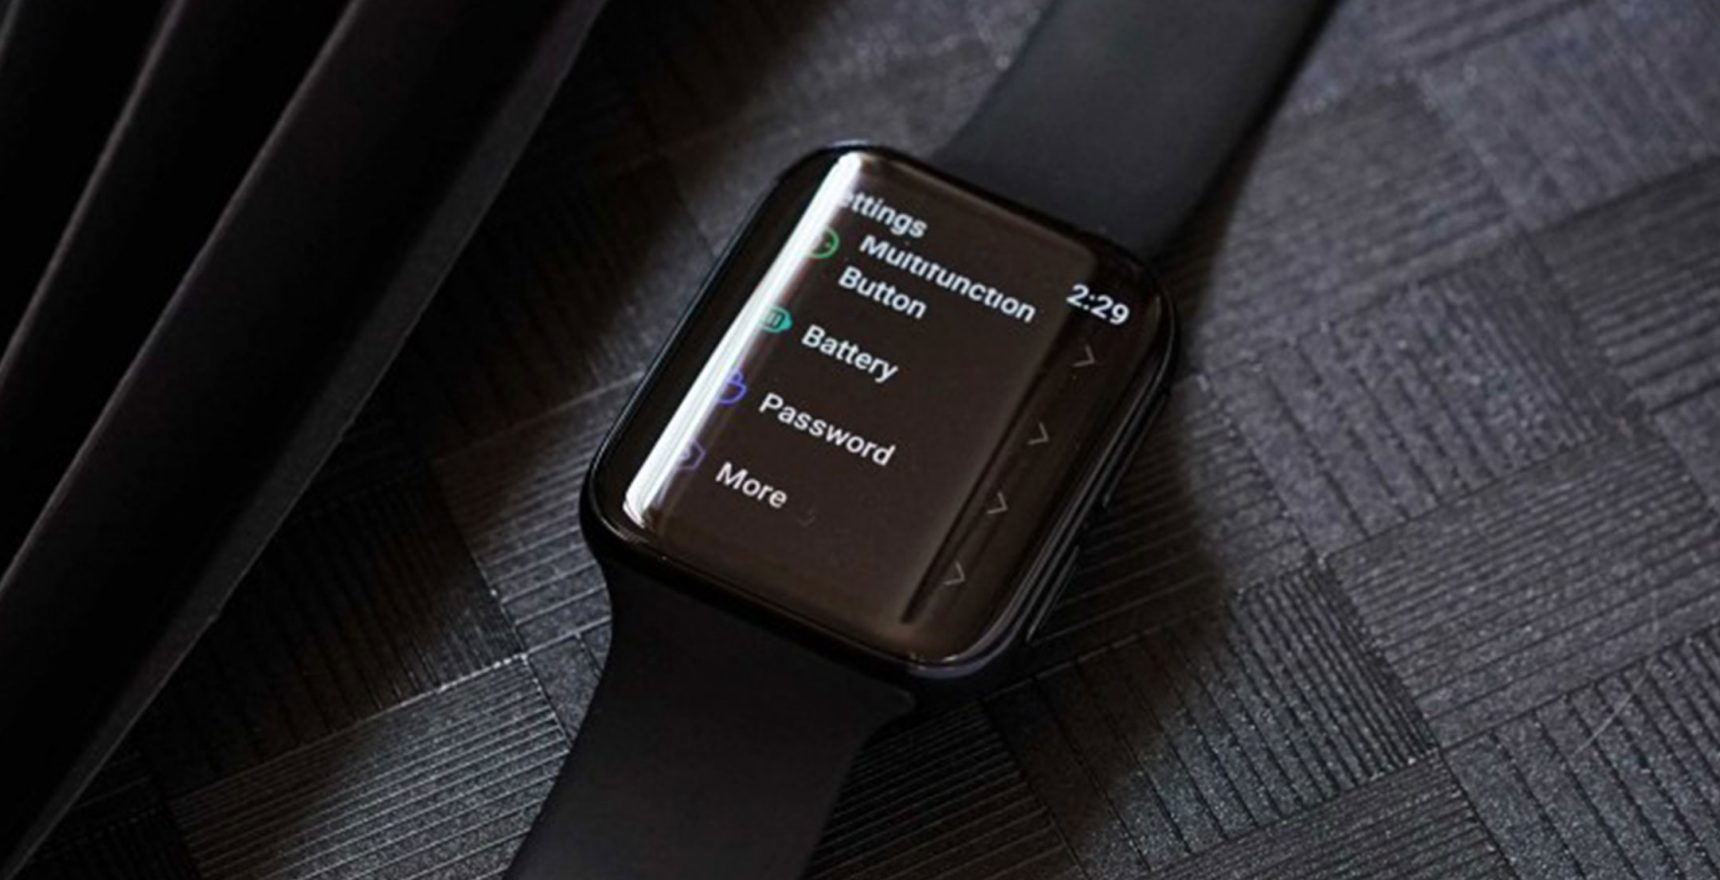 الساعة الذكية الجديدة من أوبو تشبه Apple Watch